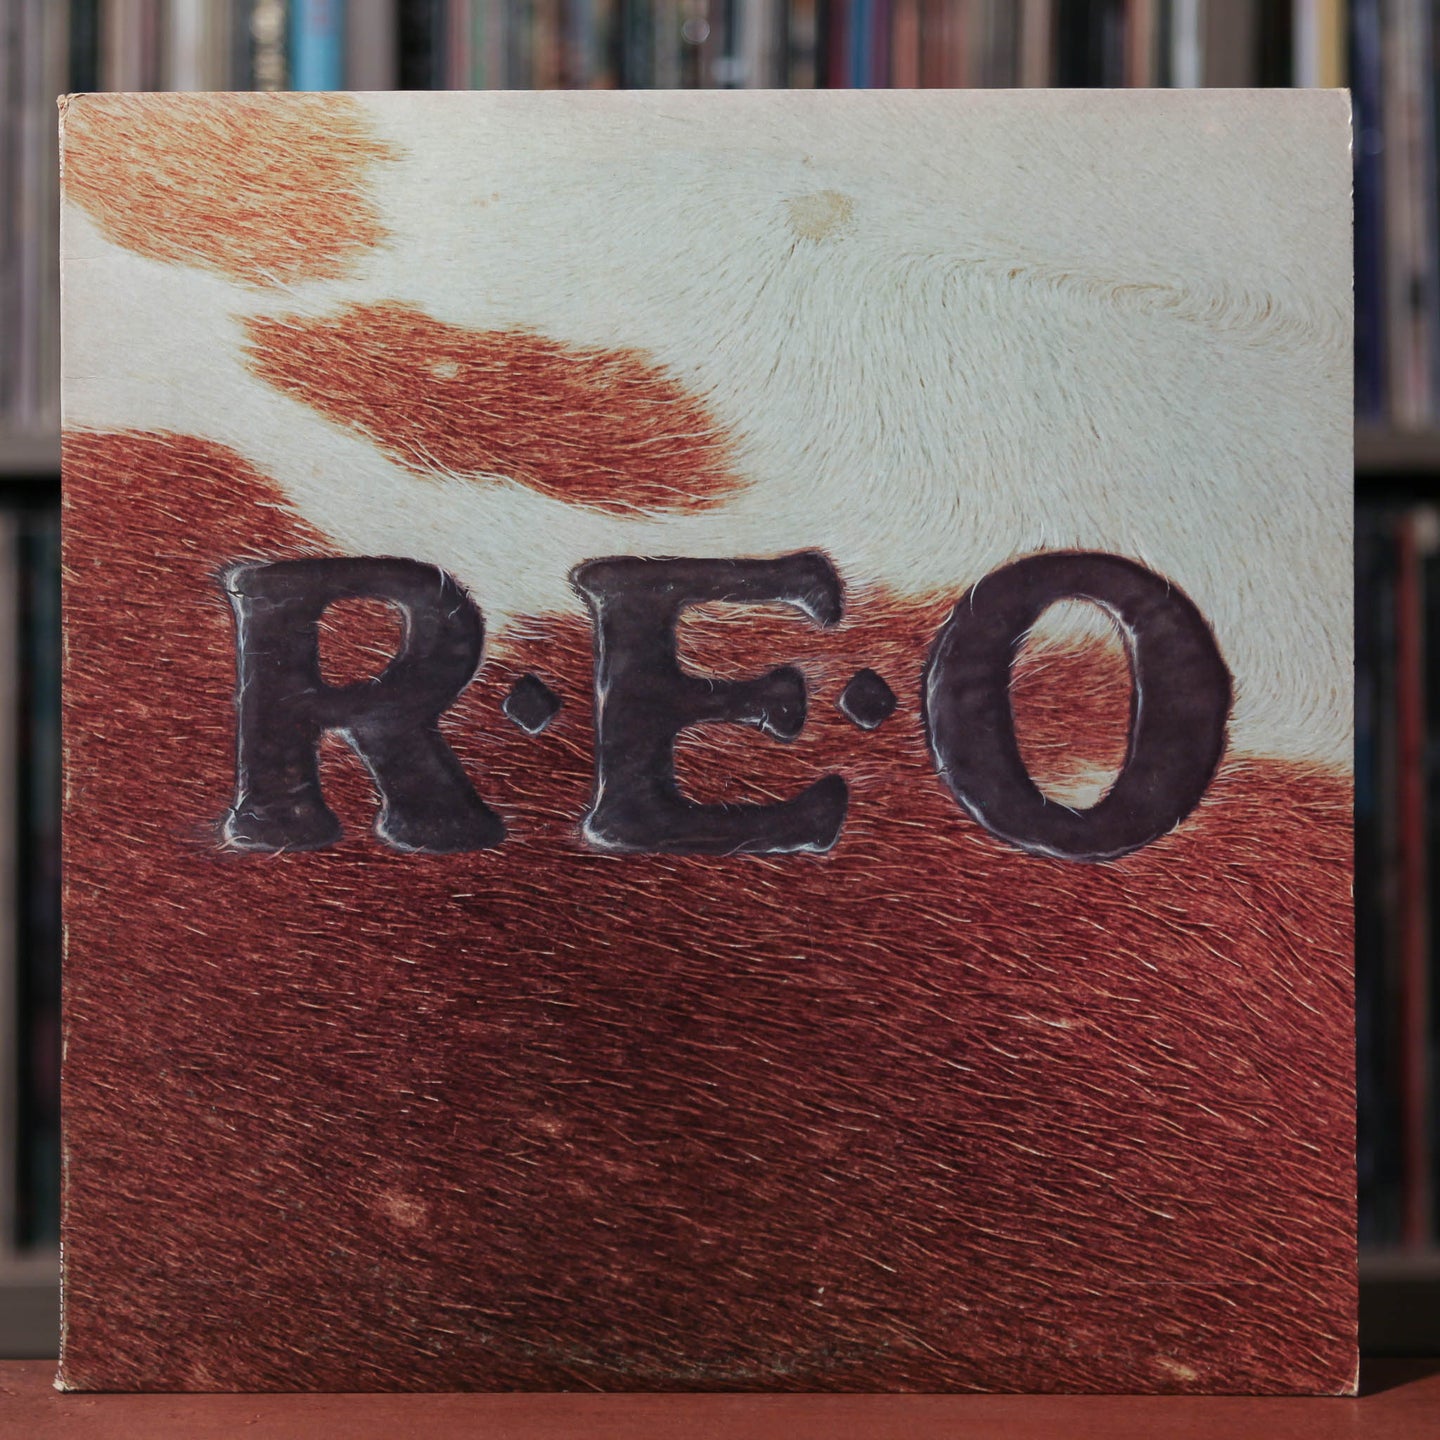 REO Speedwagon - R.E.O. - 1976 Epic, VG+/VG+